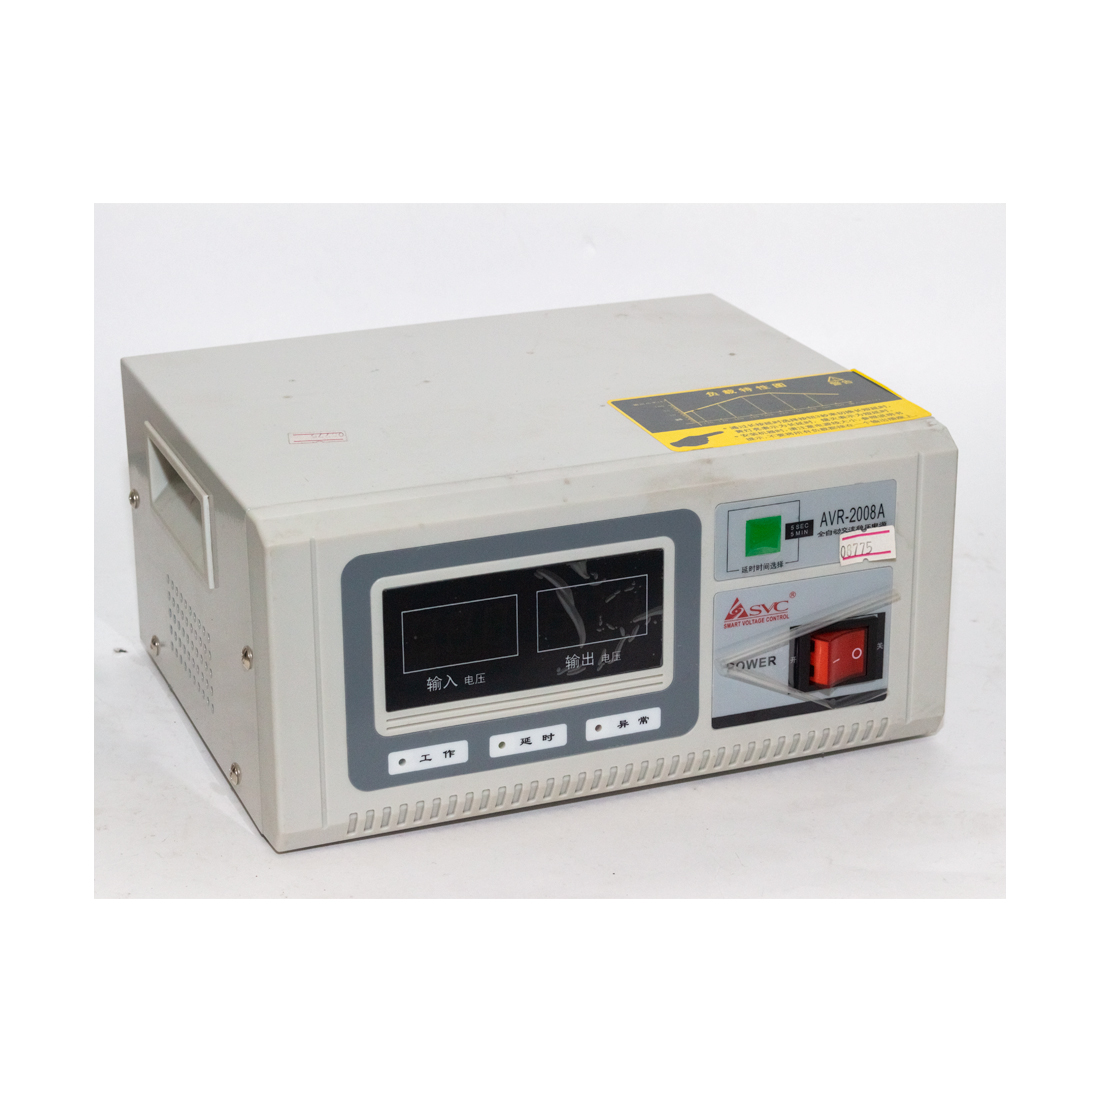 купить Стабилизатор SVC AVR R-2KVA (2000 Ватт): входное напряжение 110В: 80-140В 60 Гц, или 220В: 160-280В 50Гц. в Алматы